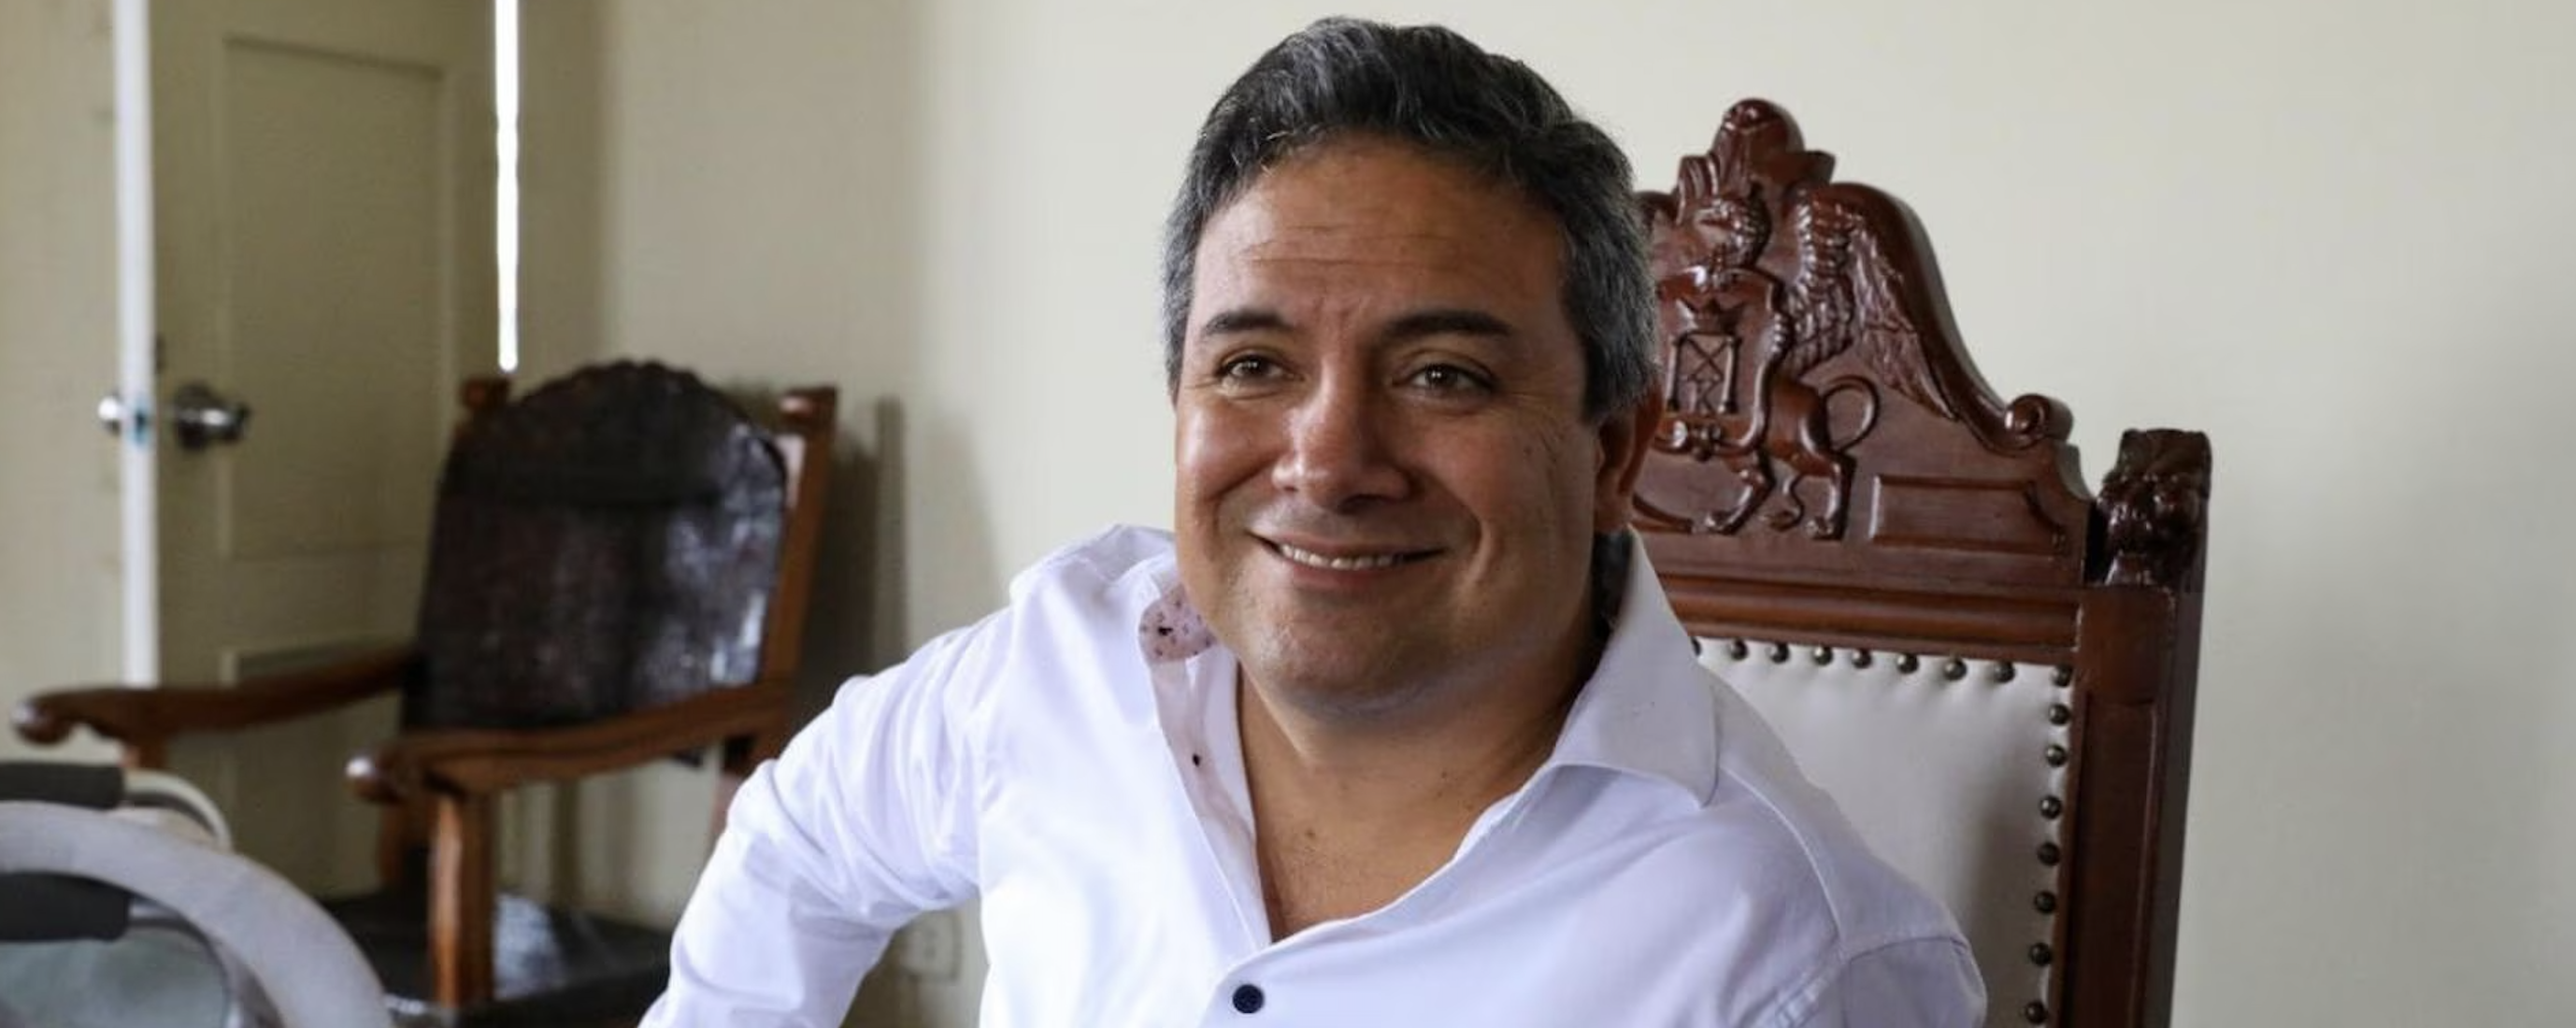 Arturo Fernández:  alcalde de Trujillo promueve la cooperación con empresas privadas